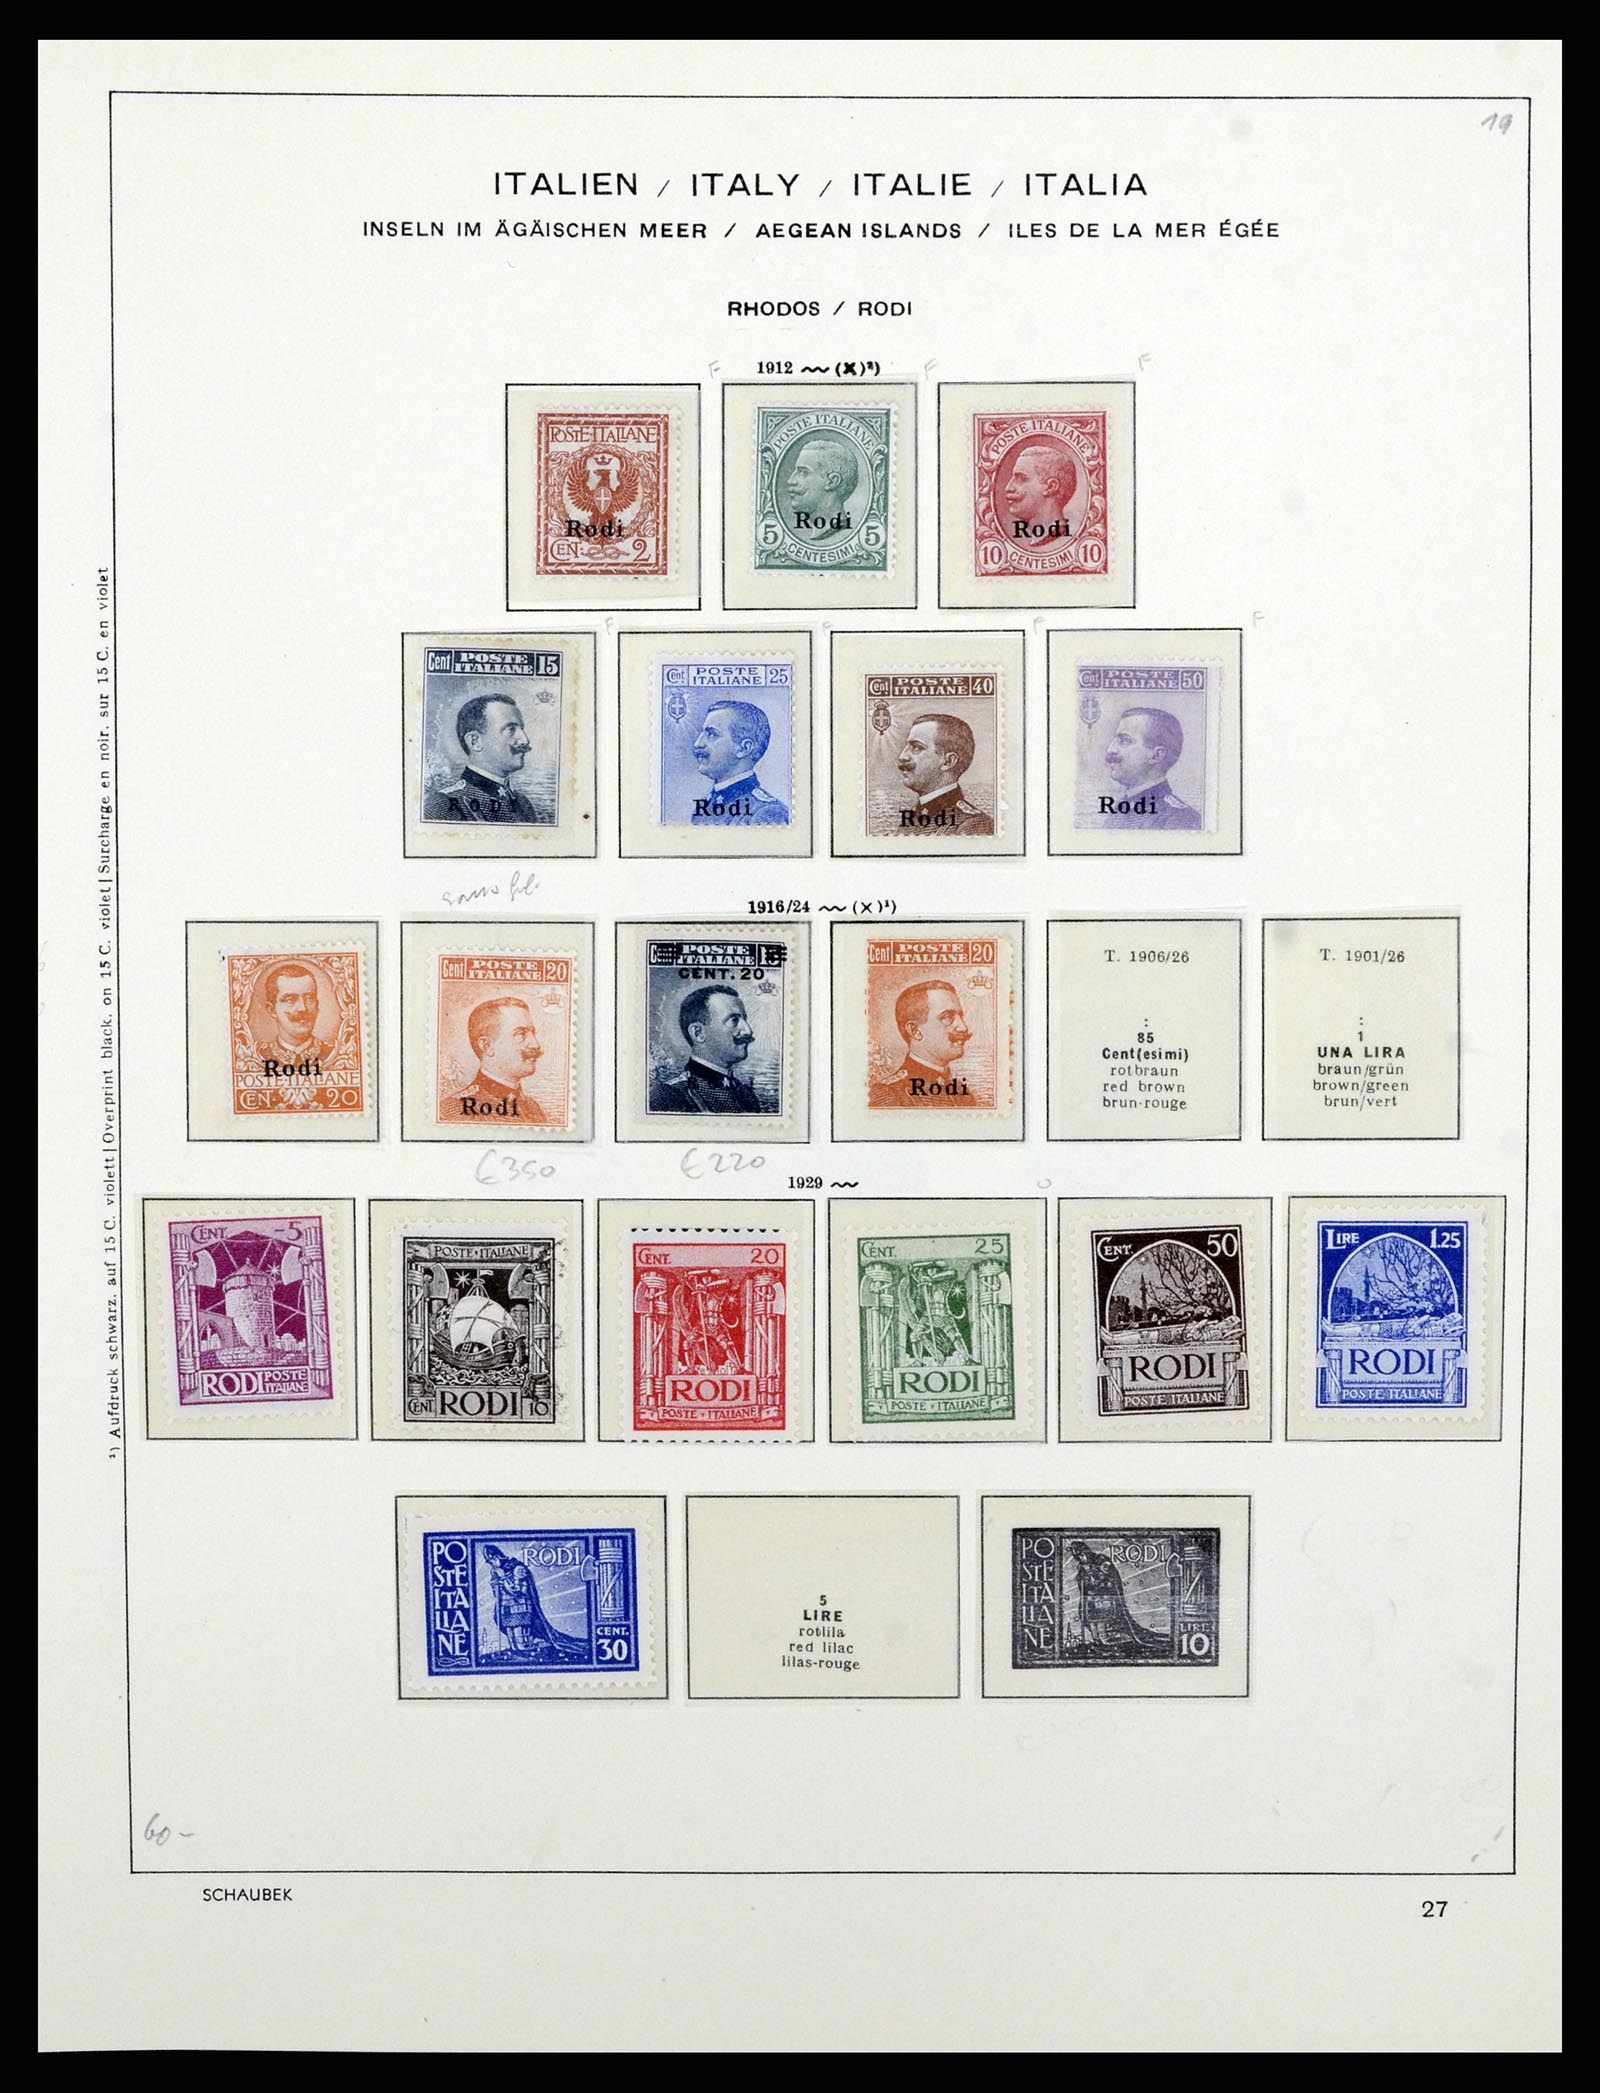 36577 053 - Stamp collection 36577 Italiaanse gebieden 1870-1940.